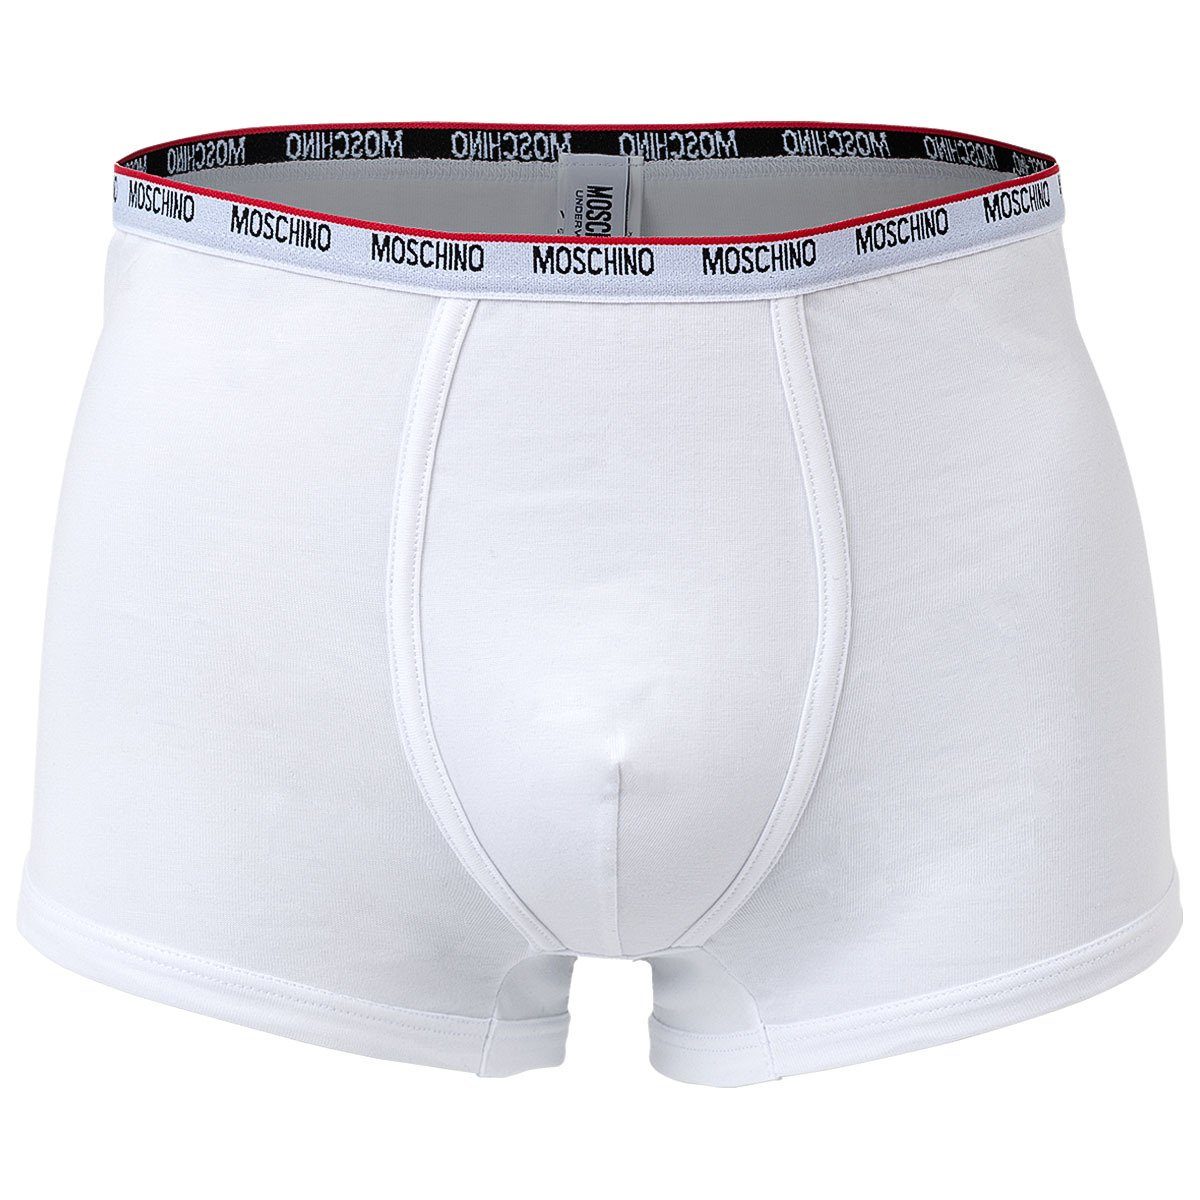 Boxer - 2er Pack Unterhose, Shorts Moschino Trunks, Herren Weiß Cotton